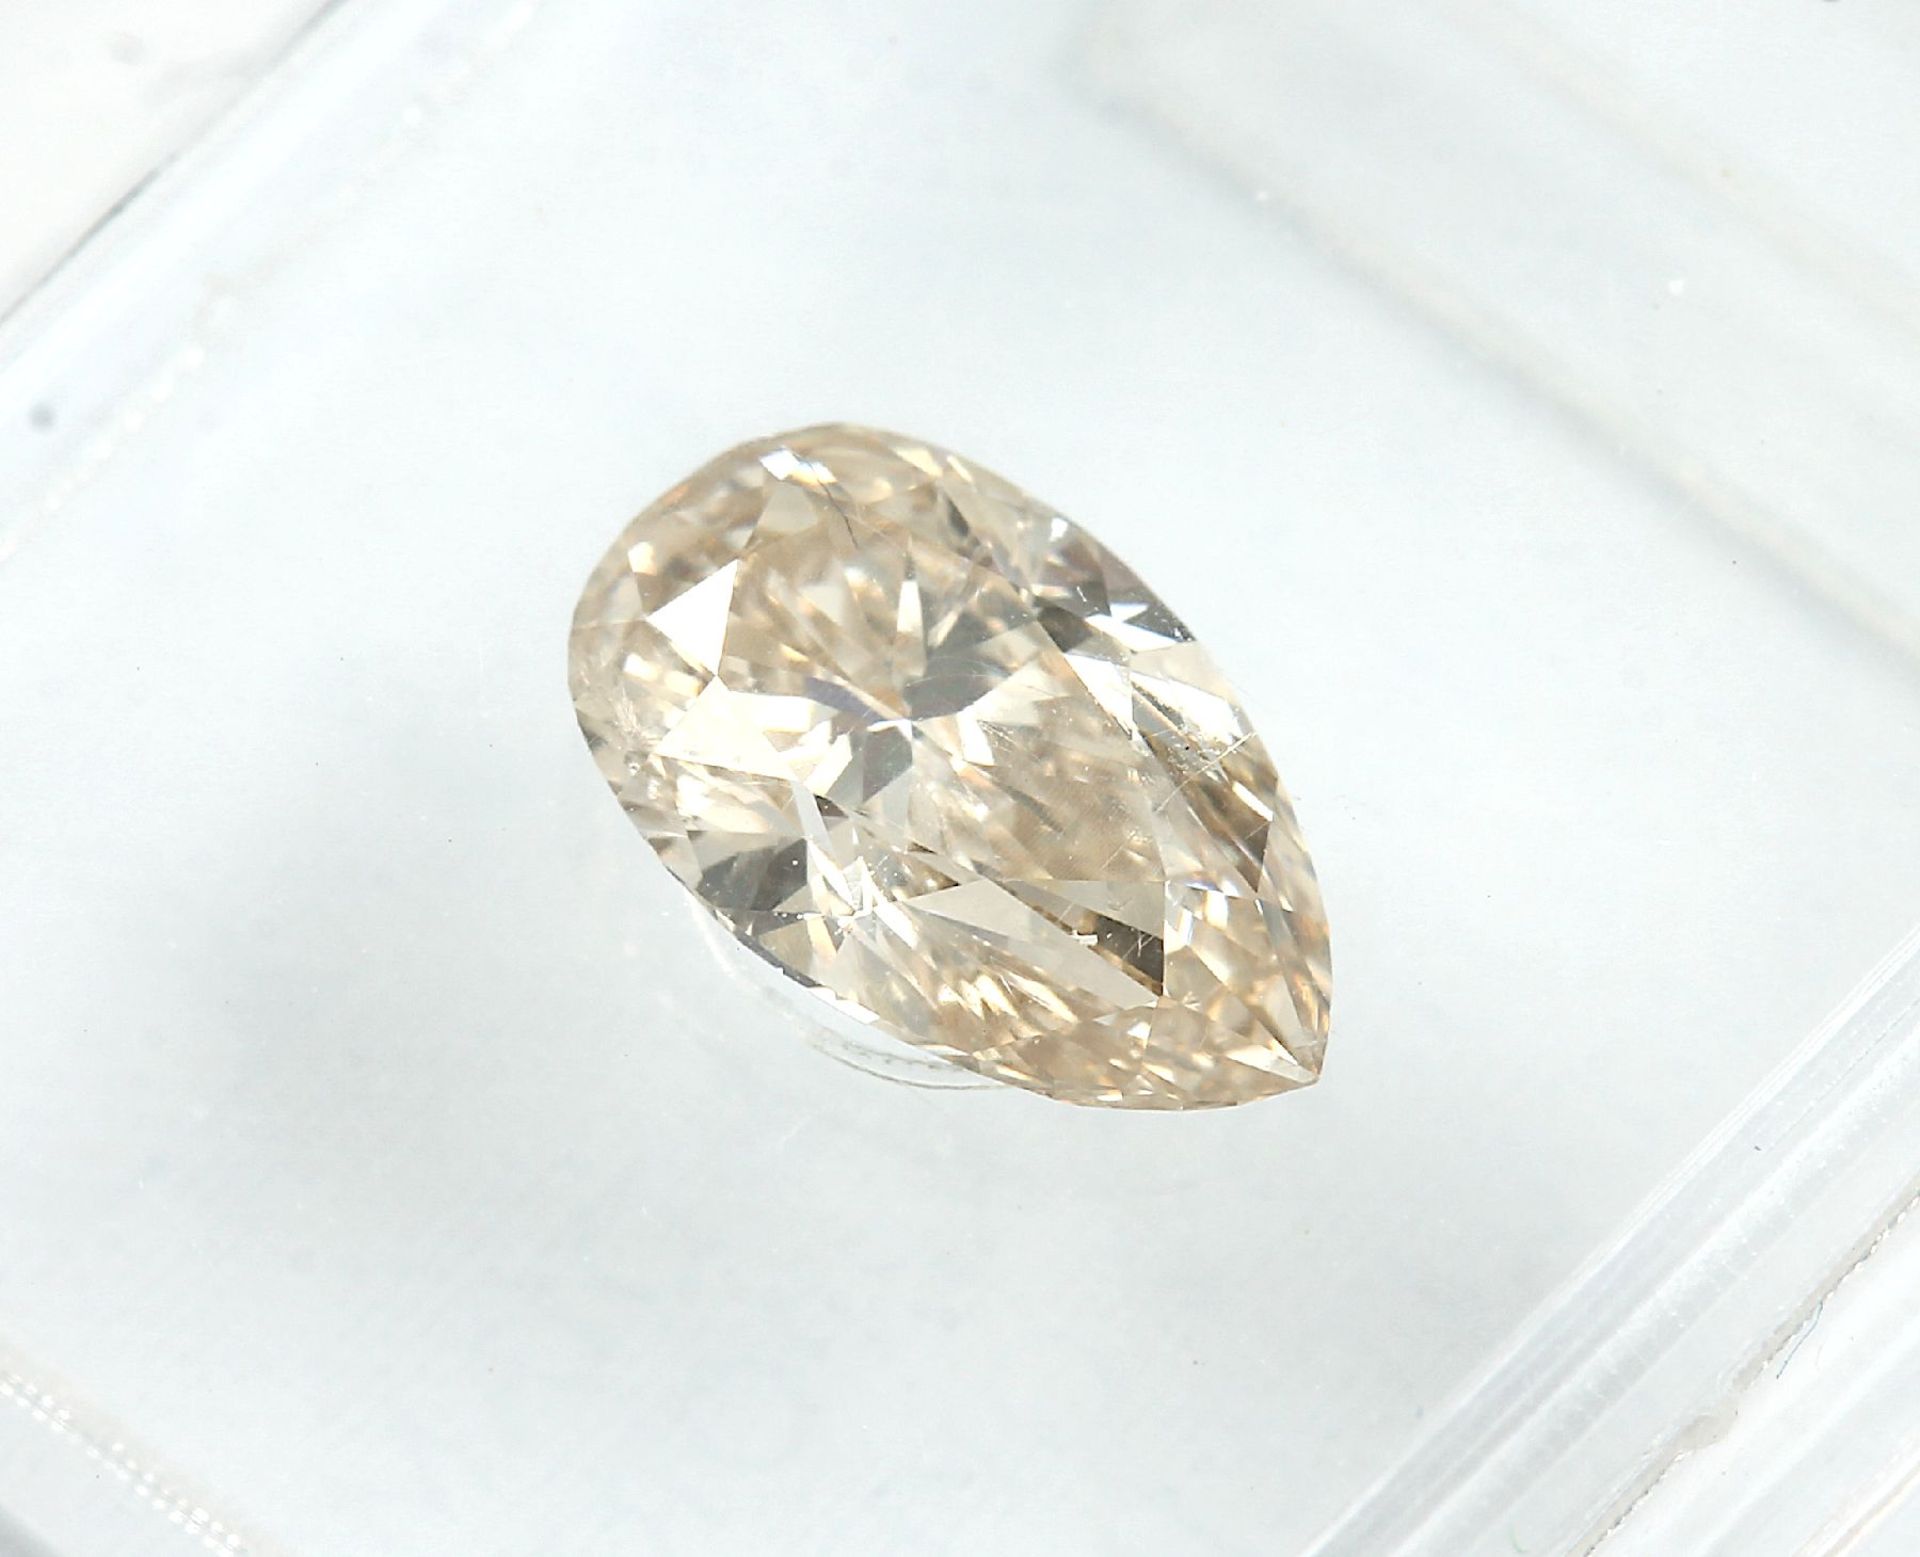 Loser Diamanttropfen, 0.72 ct, 7.55 x 4.81 x 3.07 mm, natural fancy light yellowish brown/p1, - Bild 2 aus 3